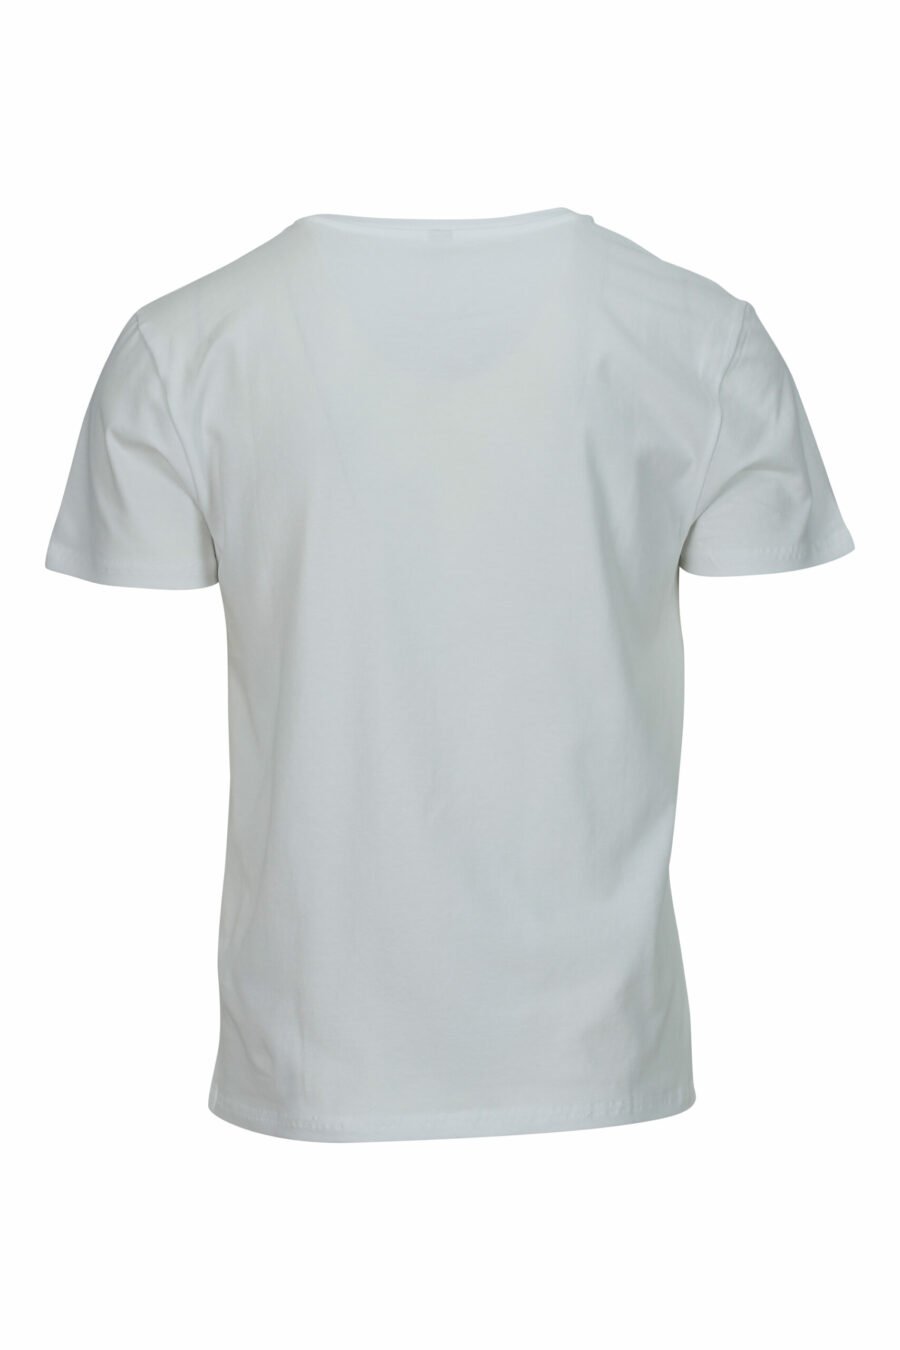 T-shirt branca com minilogo "swim" - 667113673356 1 scaled